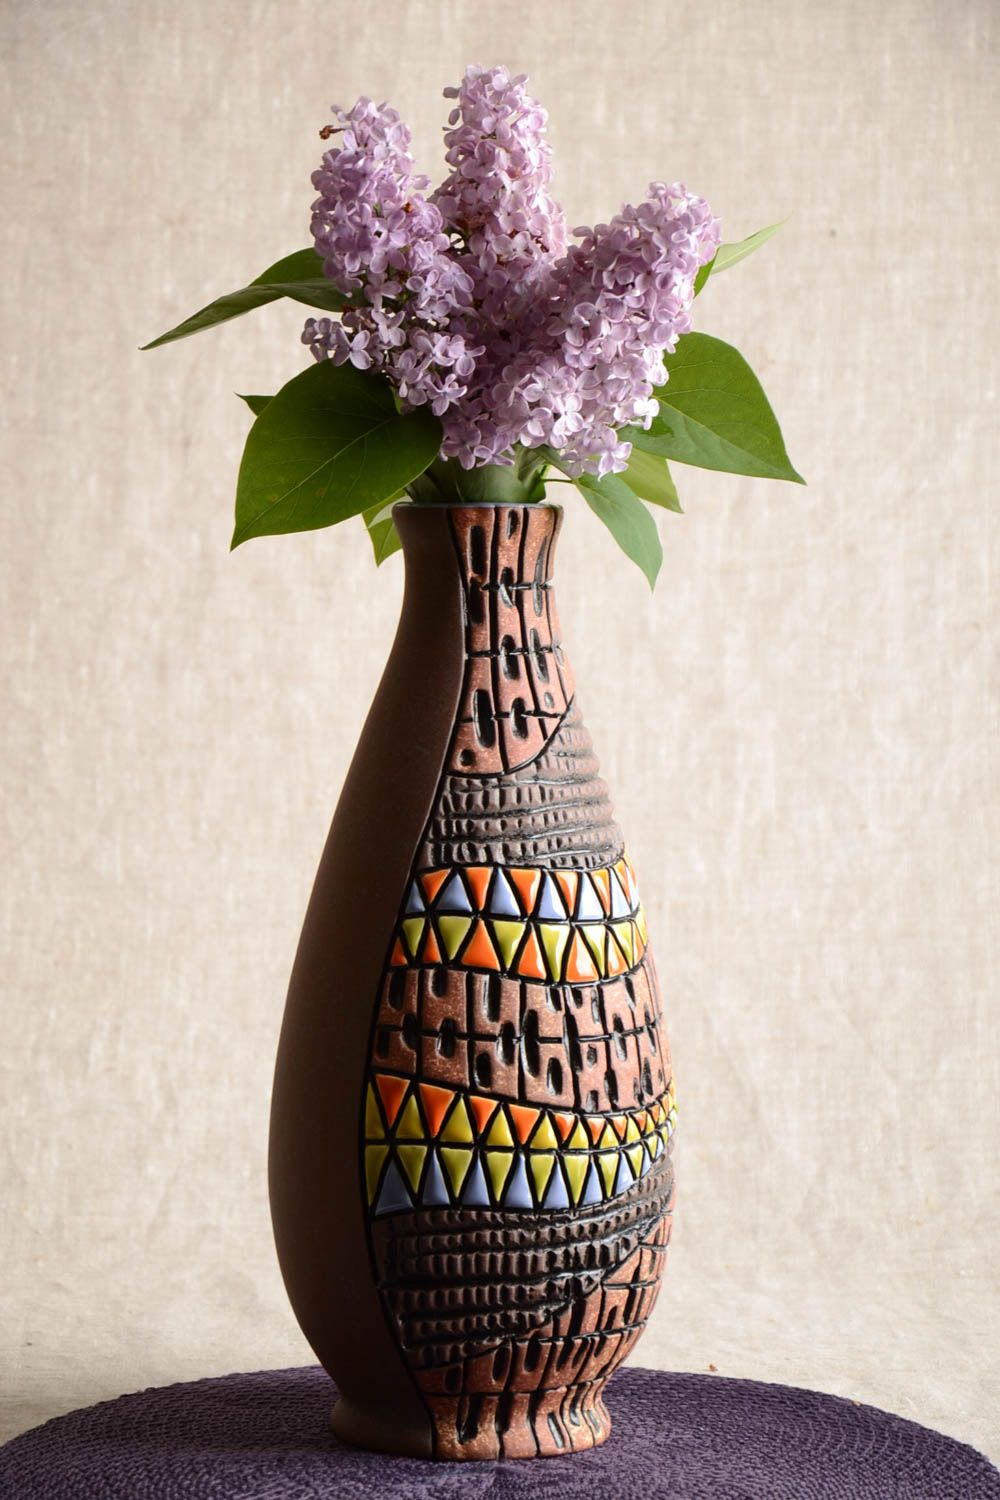 Большая полуфарфоровая ваза из глины расписанная пигментами ручной работы 1.5 л фото 1